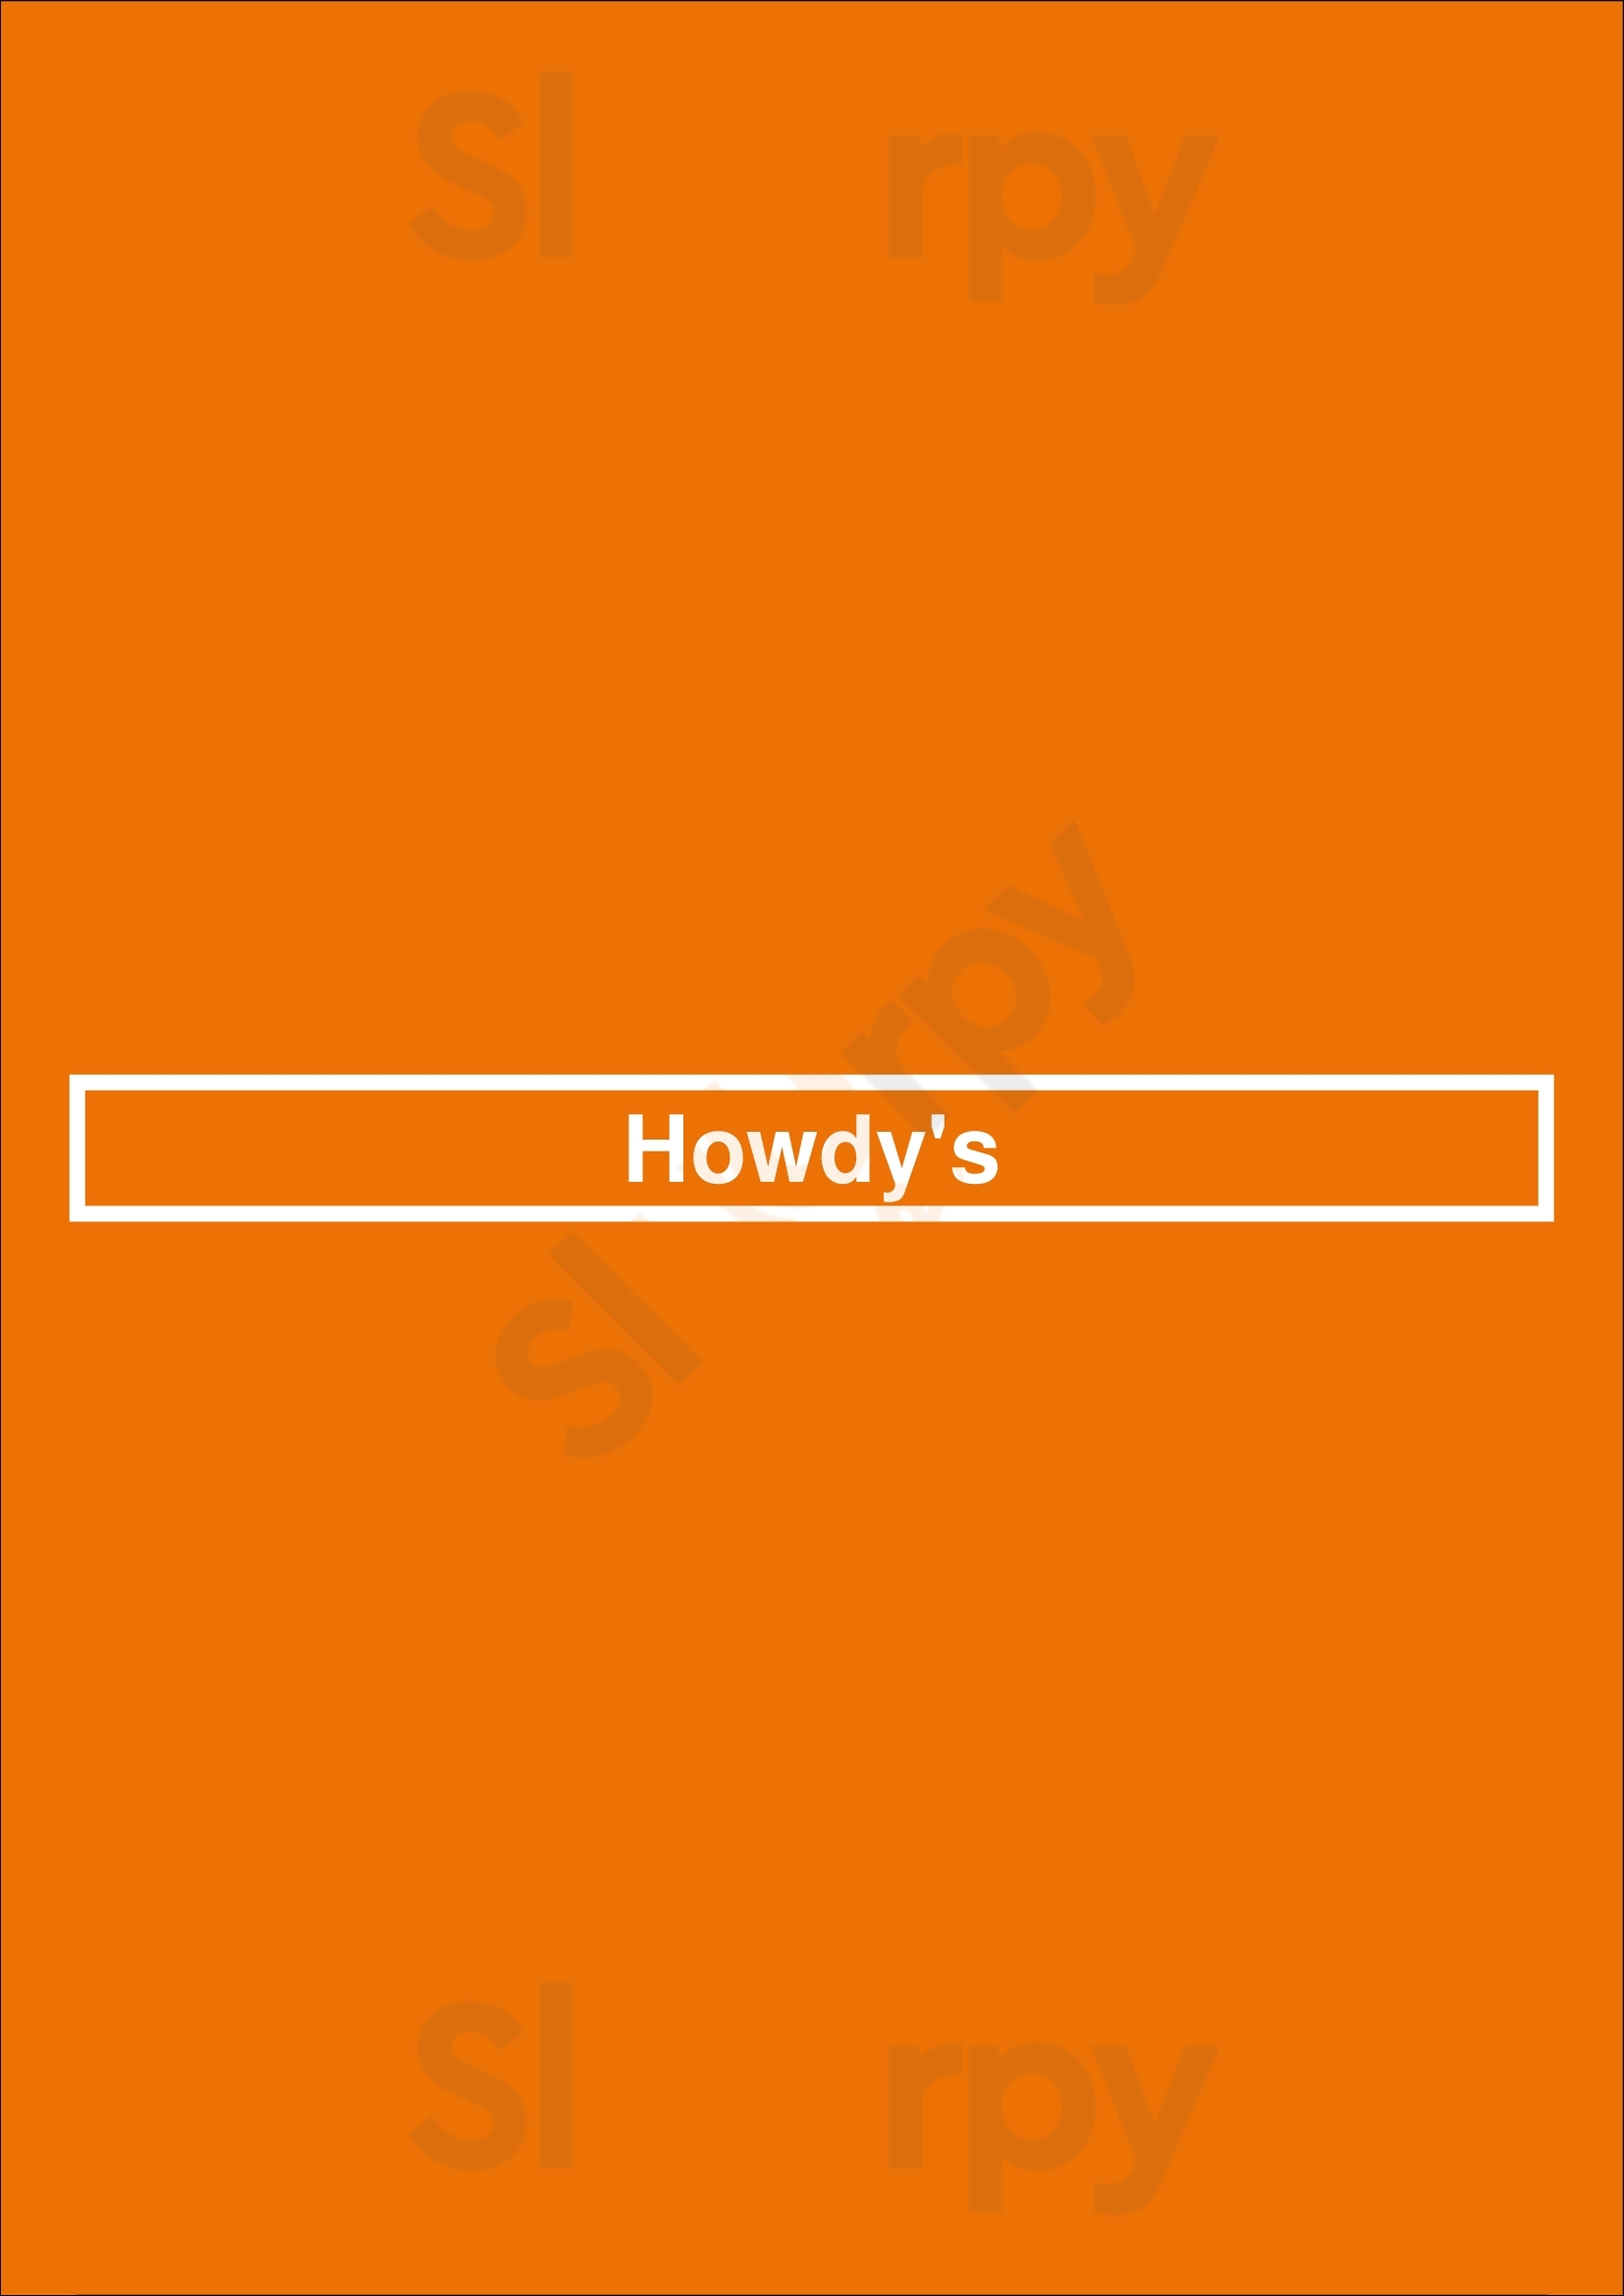 Howdy's Nootdorp Menu - 1